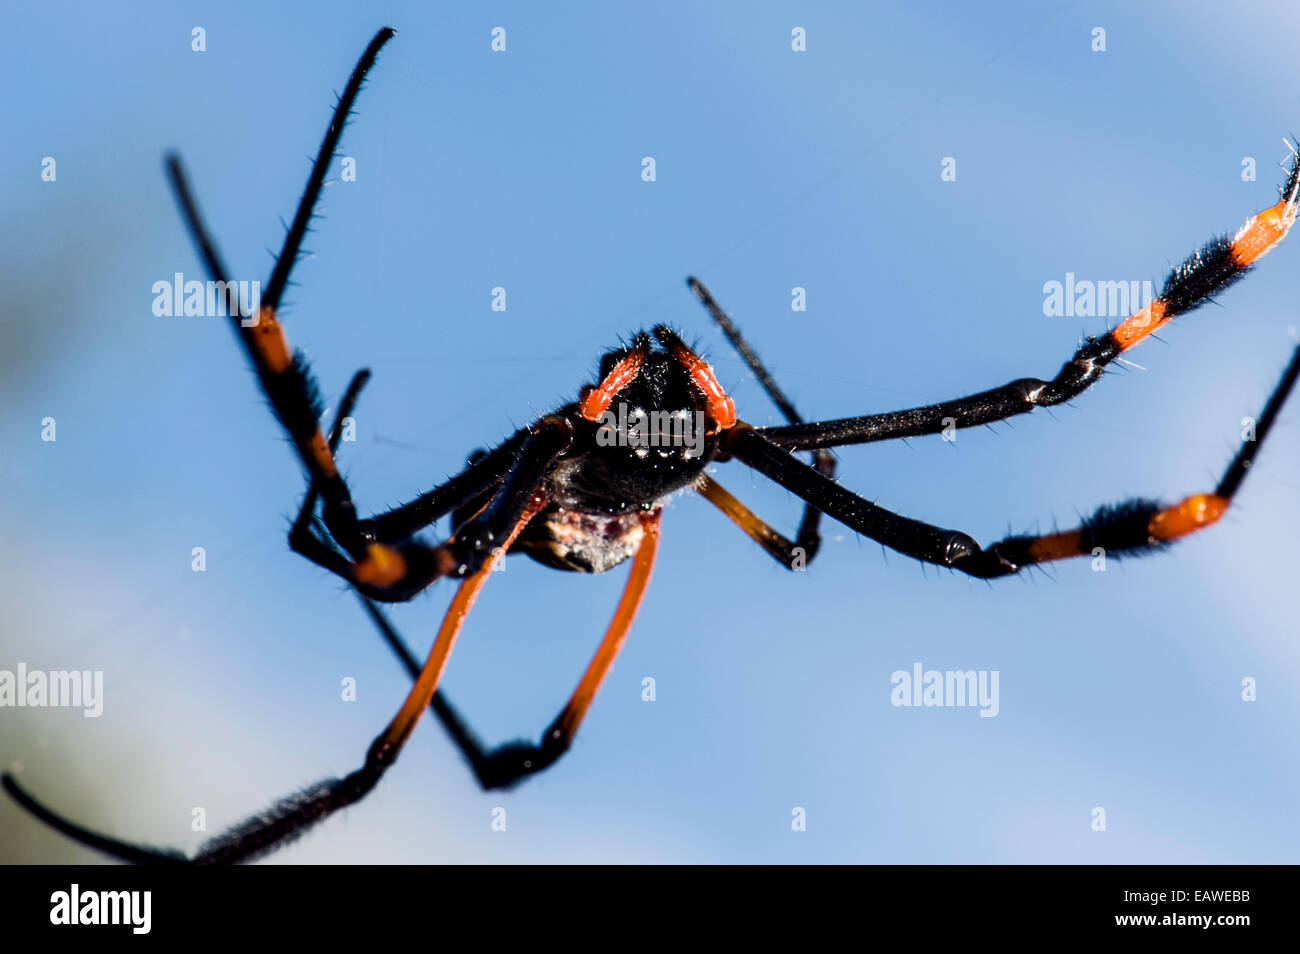 Eine weibliche Orb Spinne in ihrem Netz auf Beute warten ausgesetzt. Stockfoto